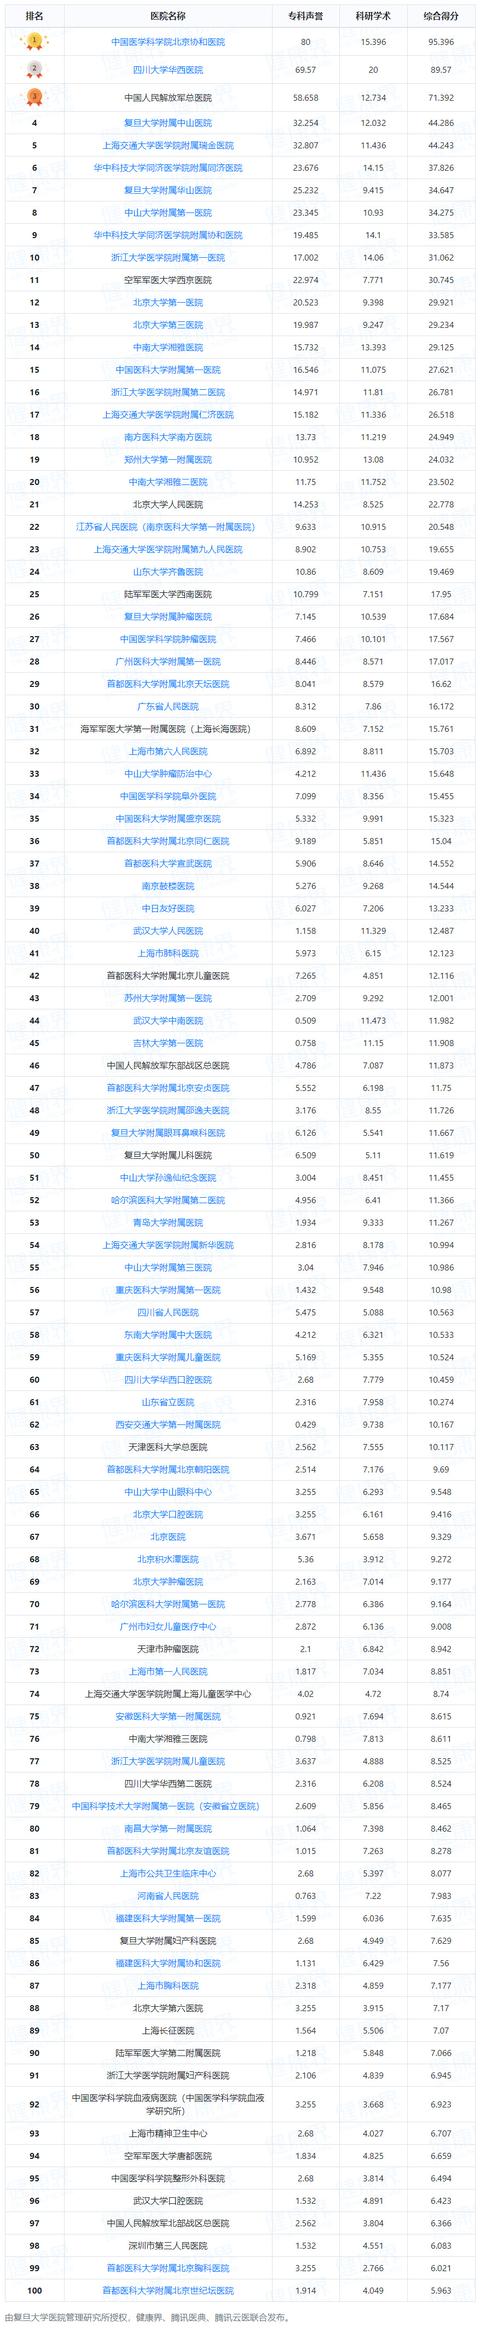 中国整容医院排行榜_《2020年度中国医院排行榜》(附详细排名)